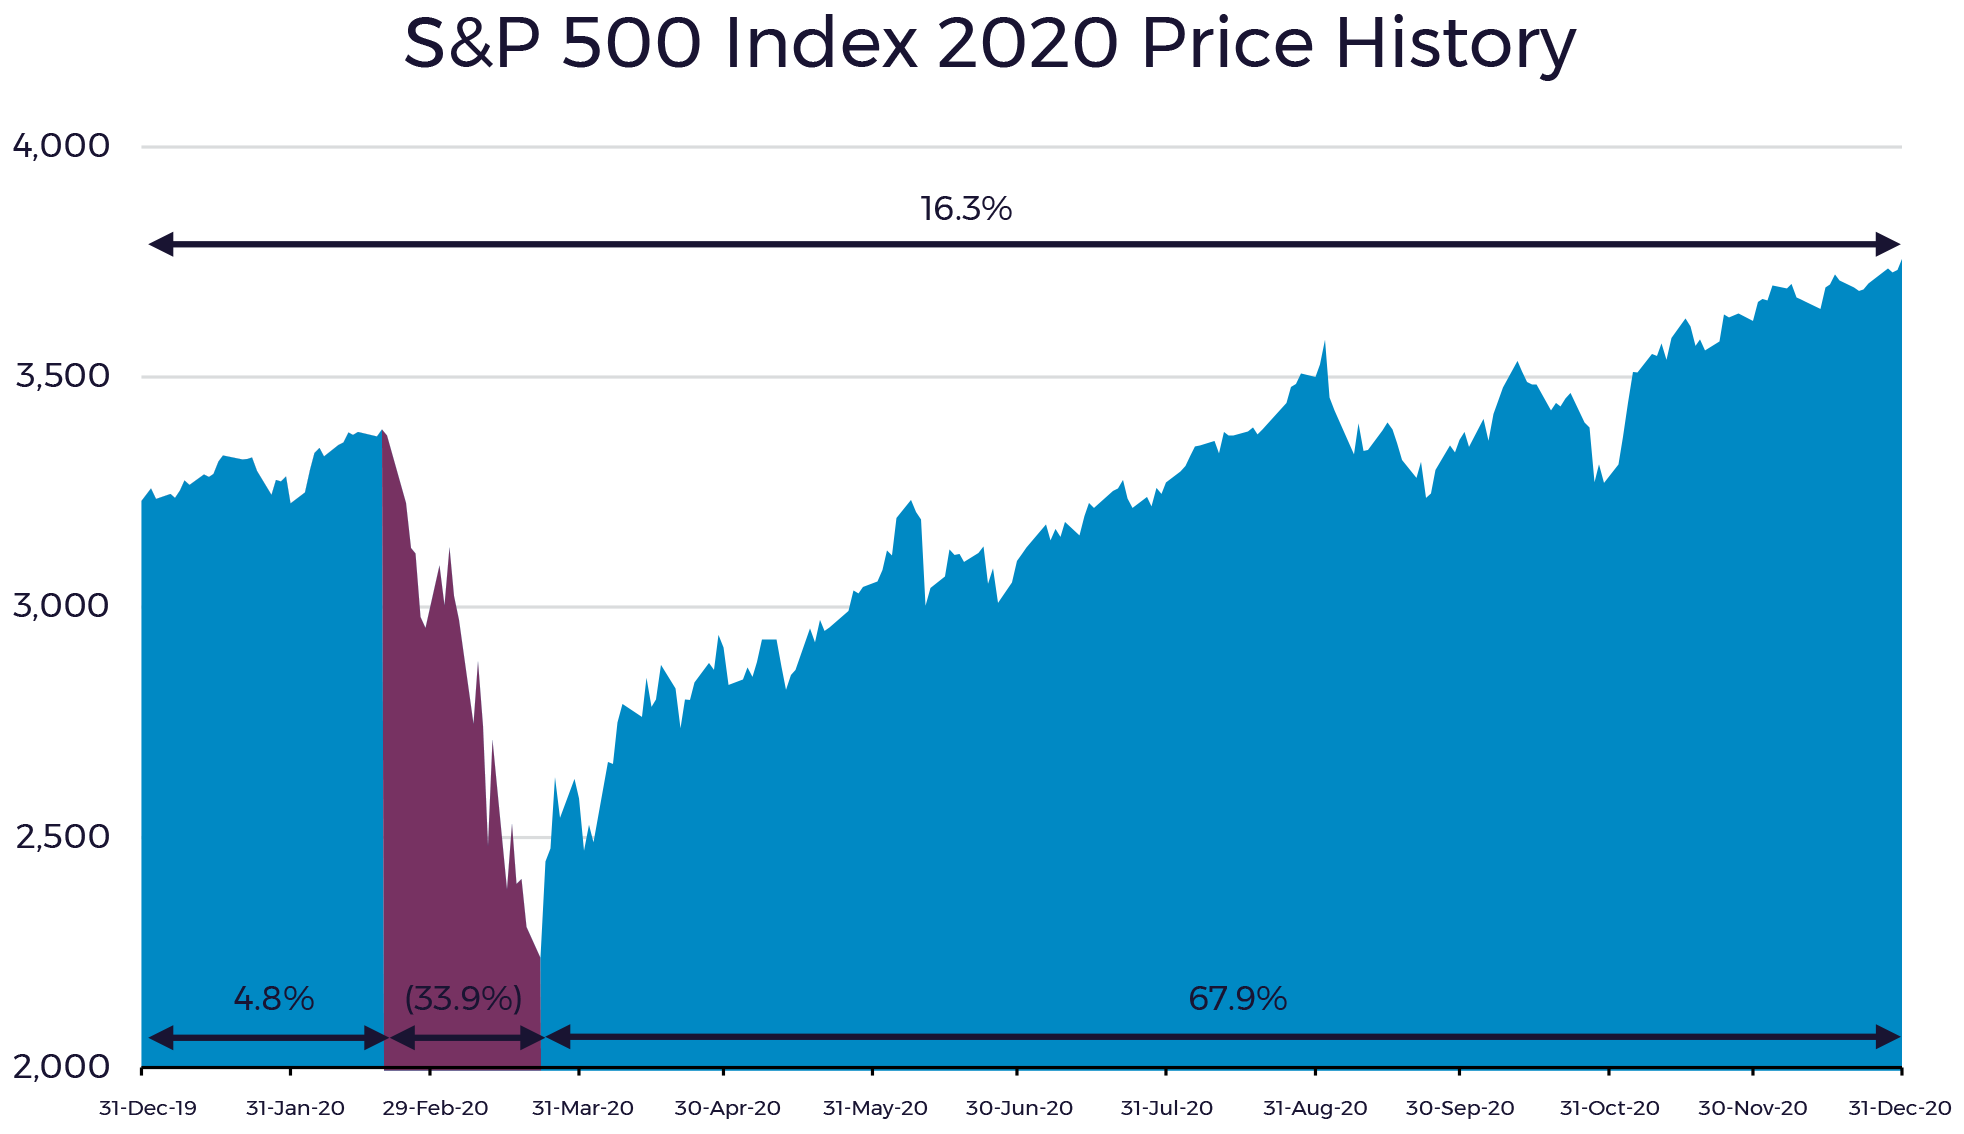 S&P 500 Index 2020 Price History